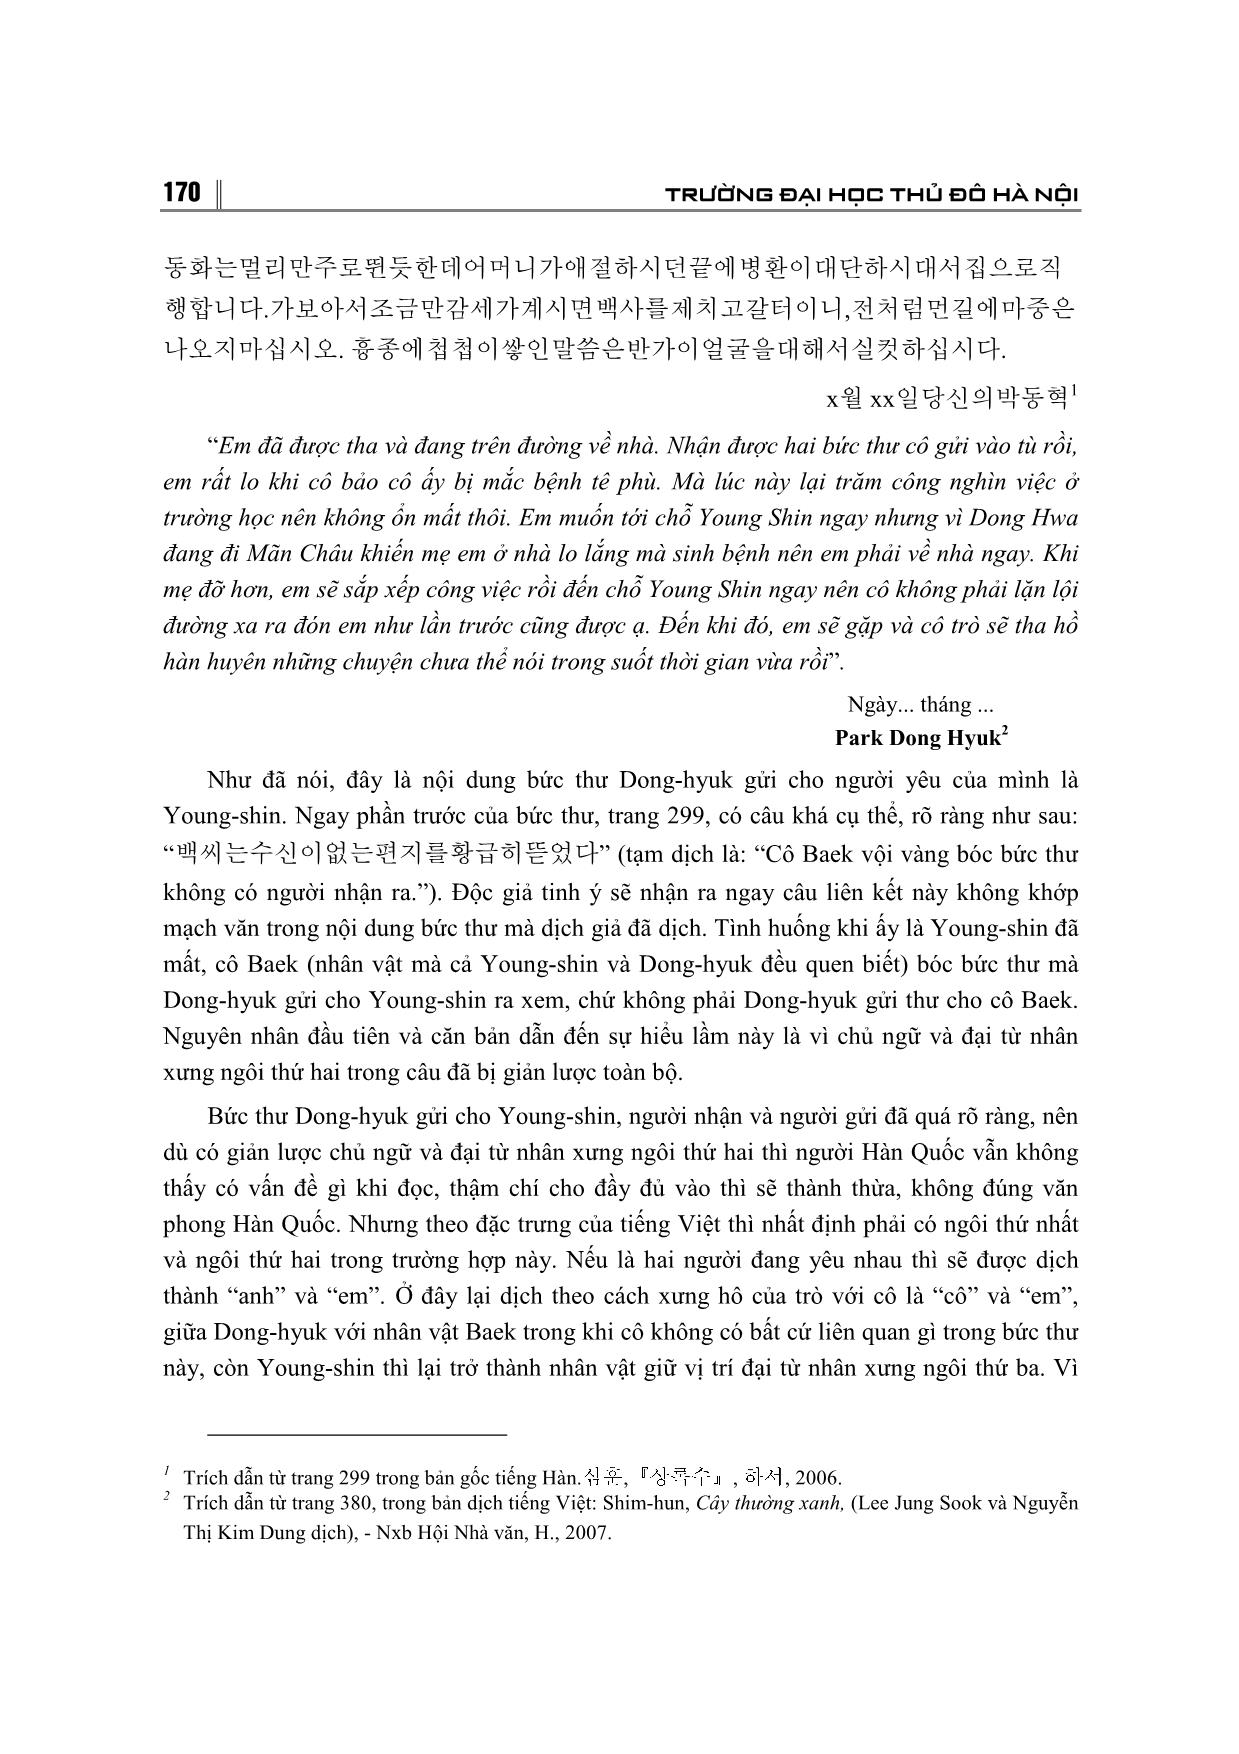 Một số hạn chế phát sinh từ yếu tố ngôn ngữ khi dịch tác phẩm văn học Hàn Quốc sang Tiếng Việt trang 4